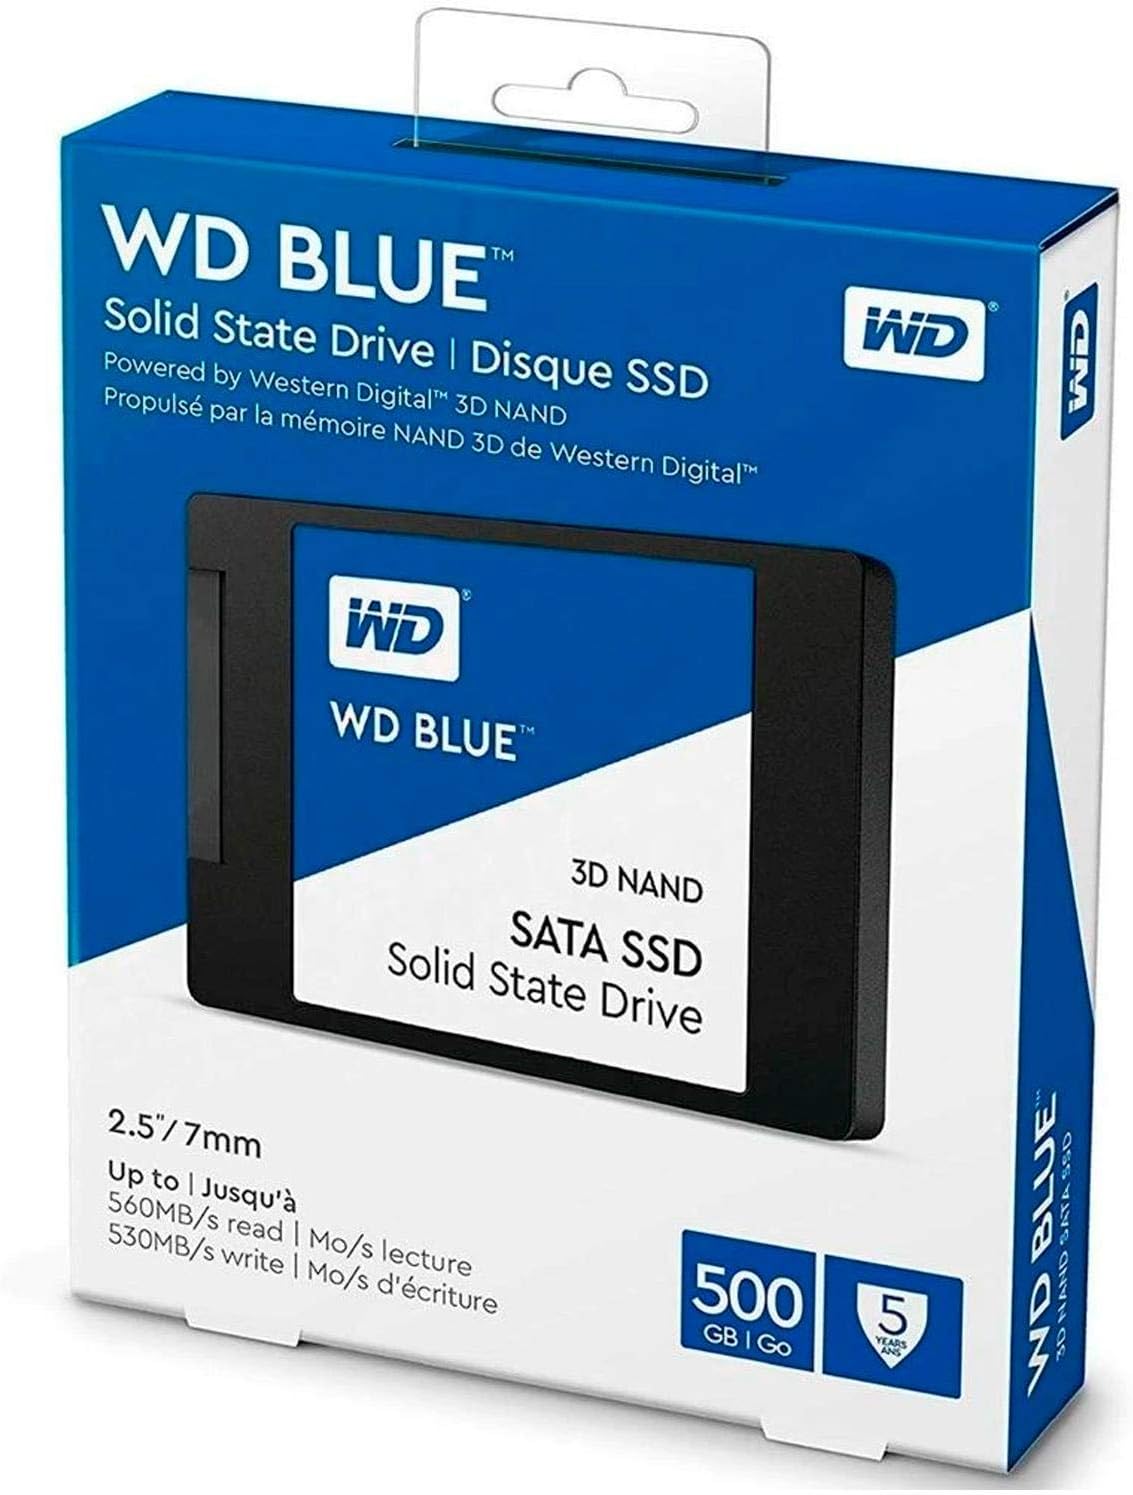 Western Digital 500GB WD Blue 3D NAND Internal PC SSD - SATA III 6 Gb/s, 2.5/7mm, Up to 560 MB/s - WDS500G2B0A, Solid State Drive